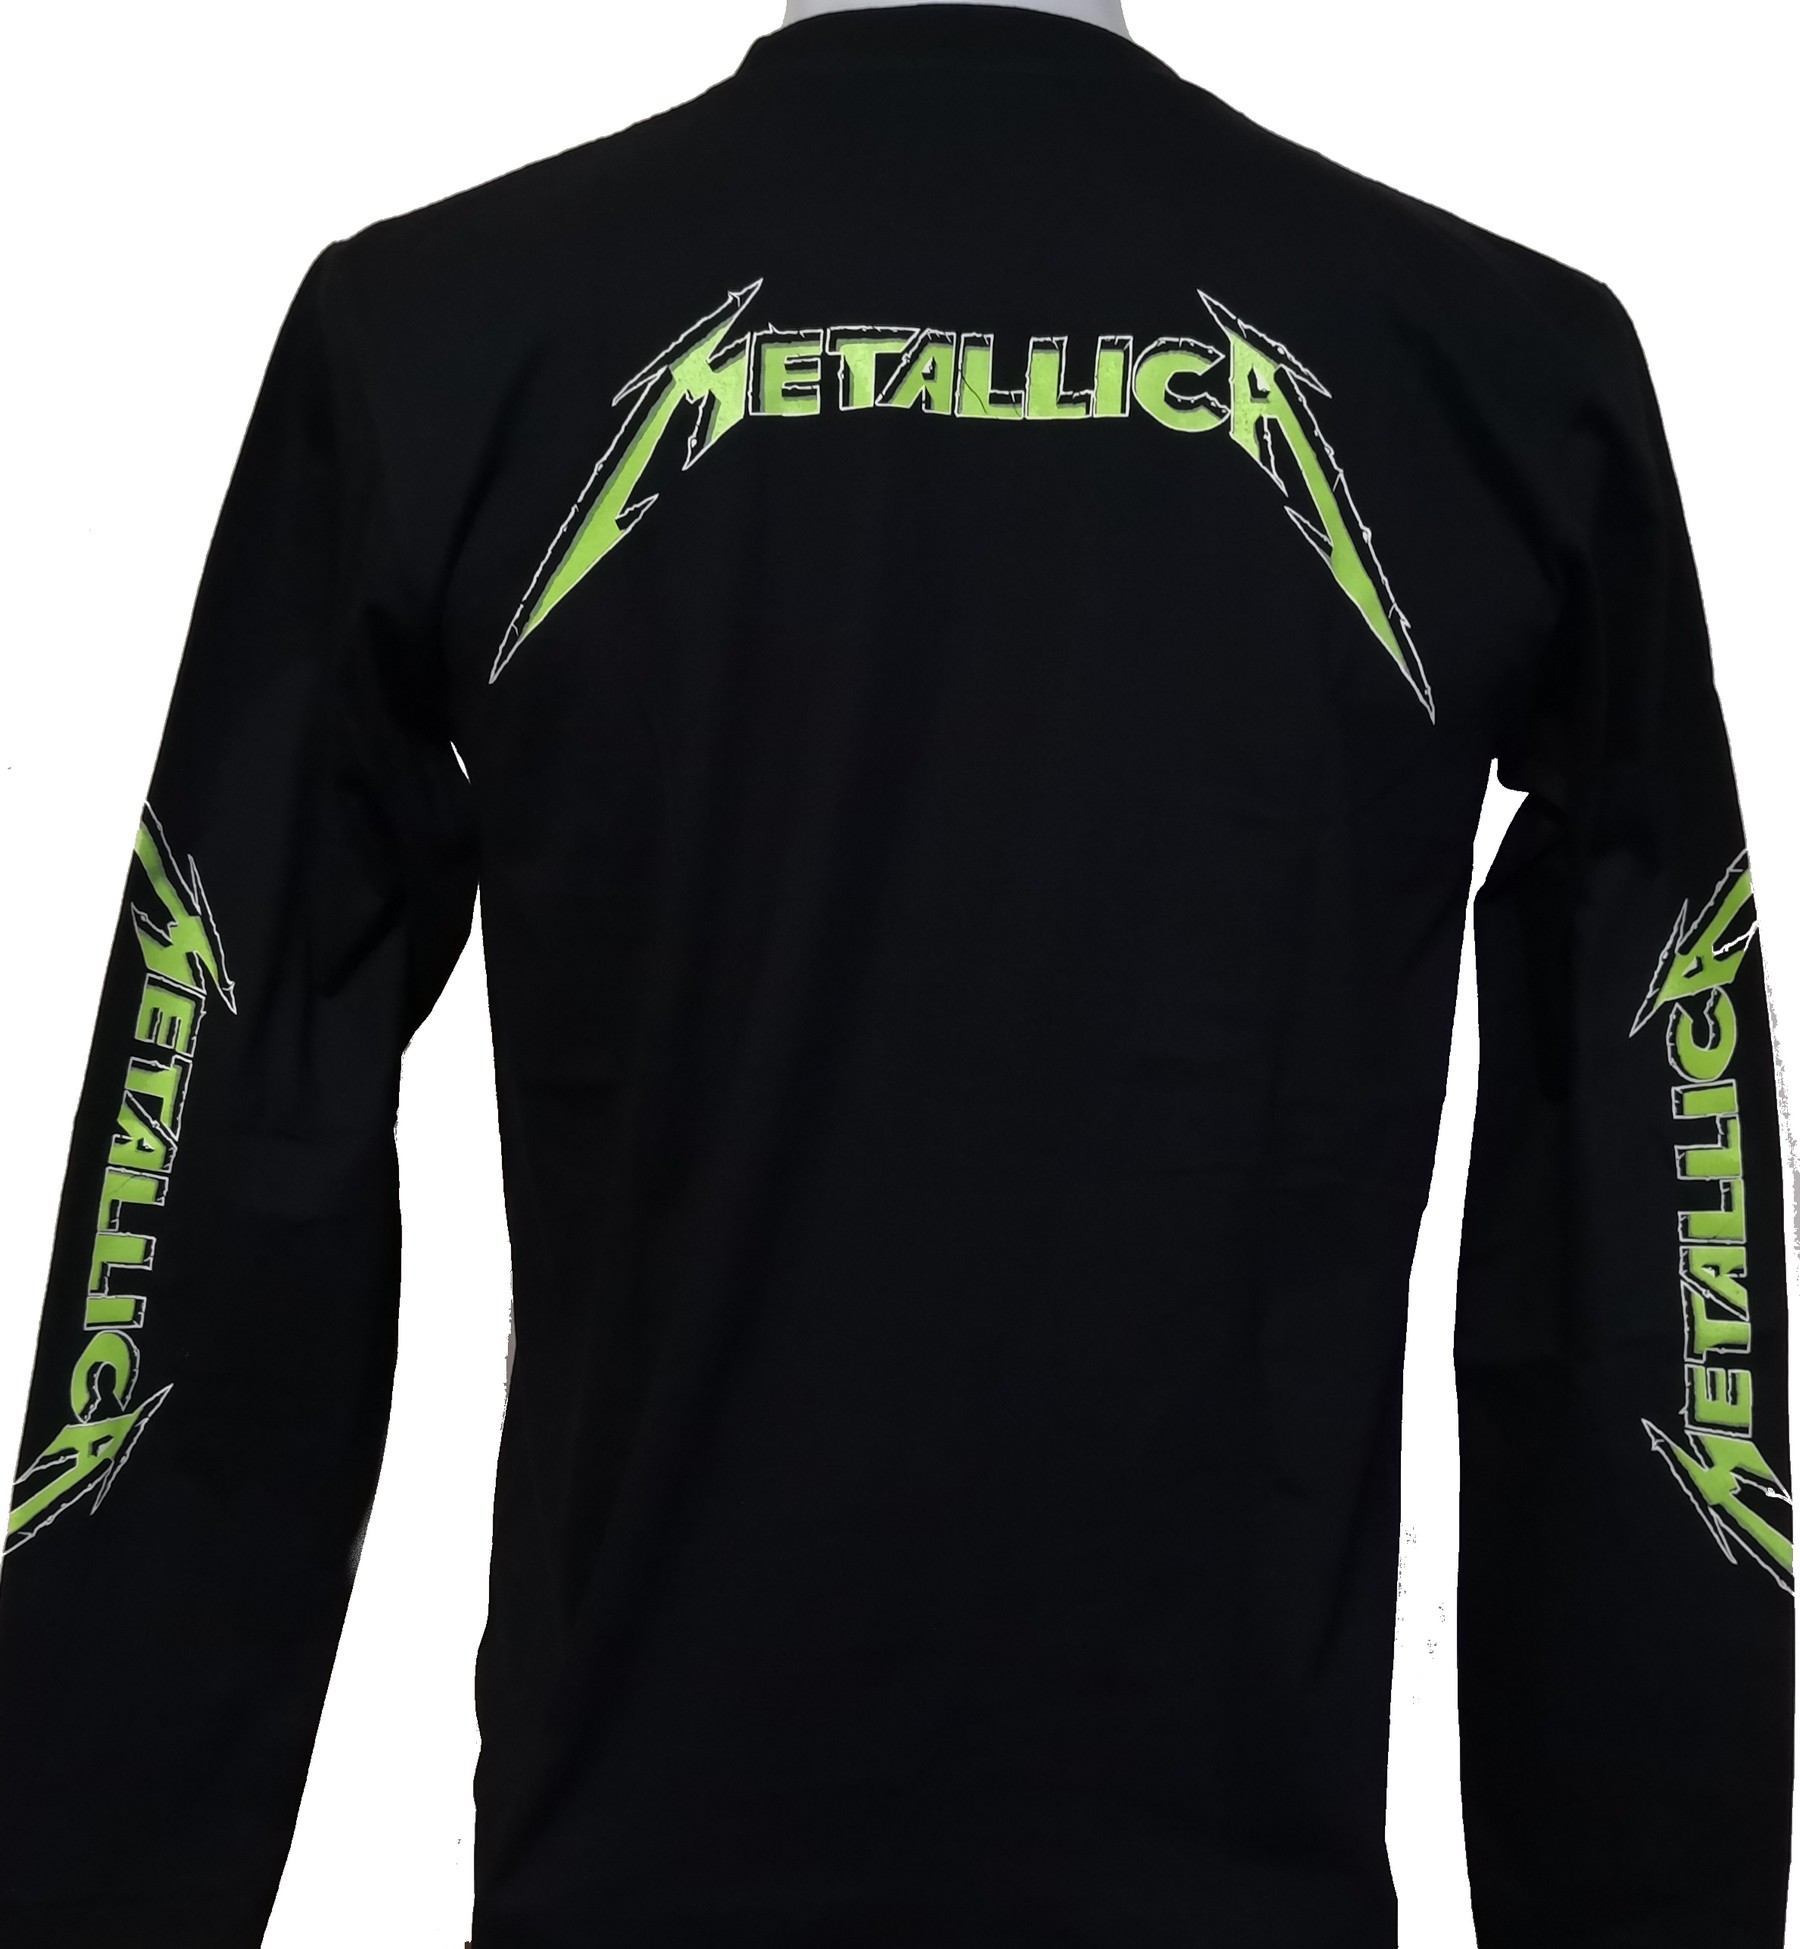 Herformuleren Momentum Doodskaak Metallica long-sleeved t-shirt …and Justice for All size M – RoxxBKK